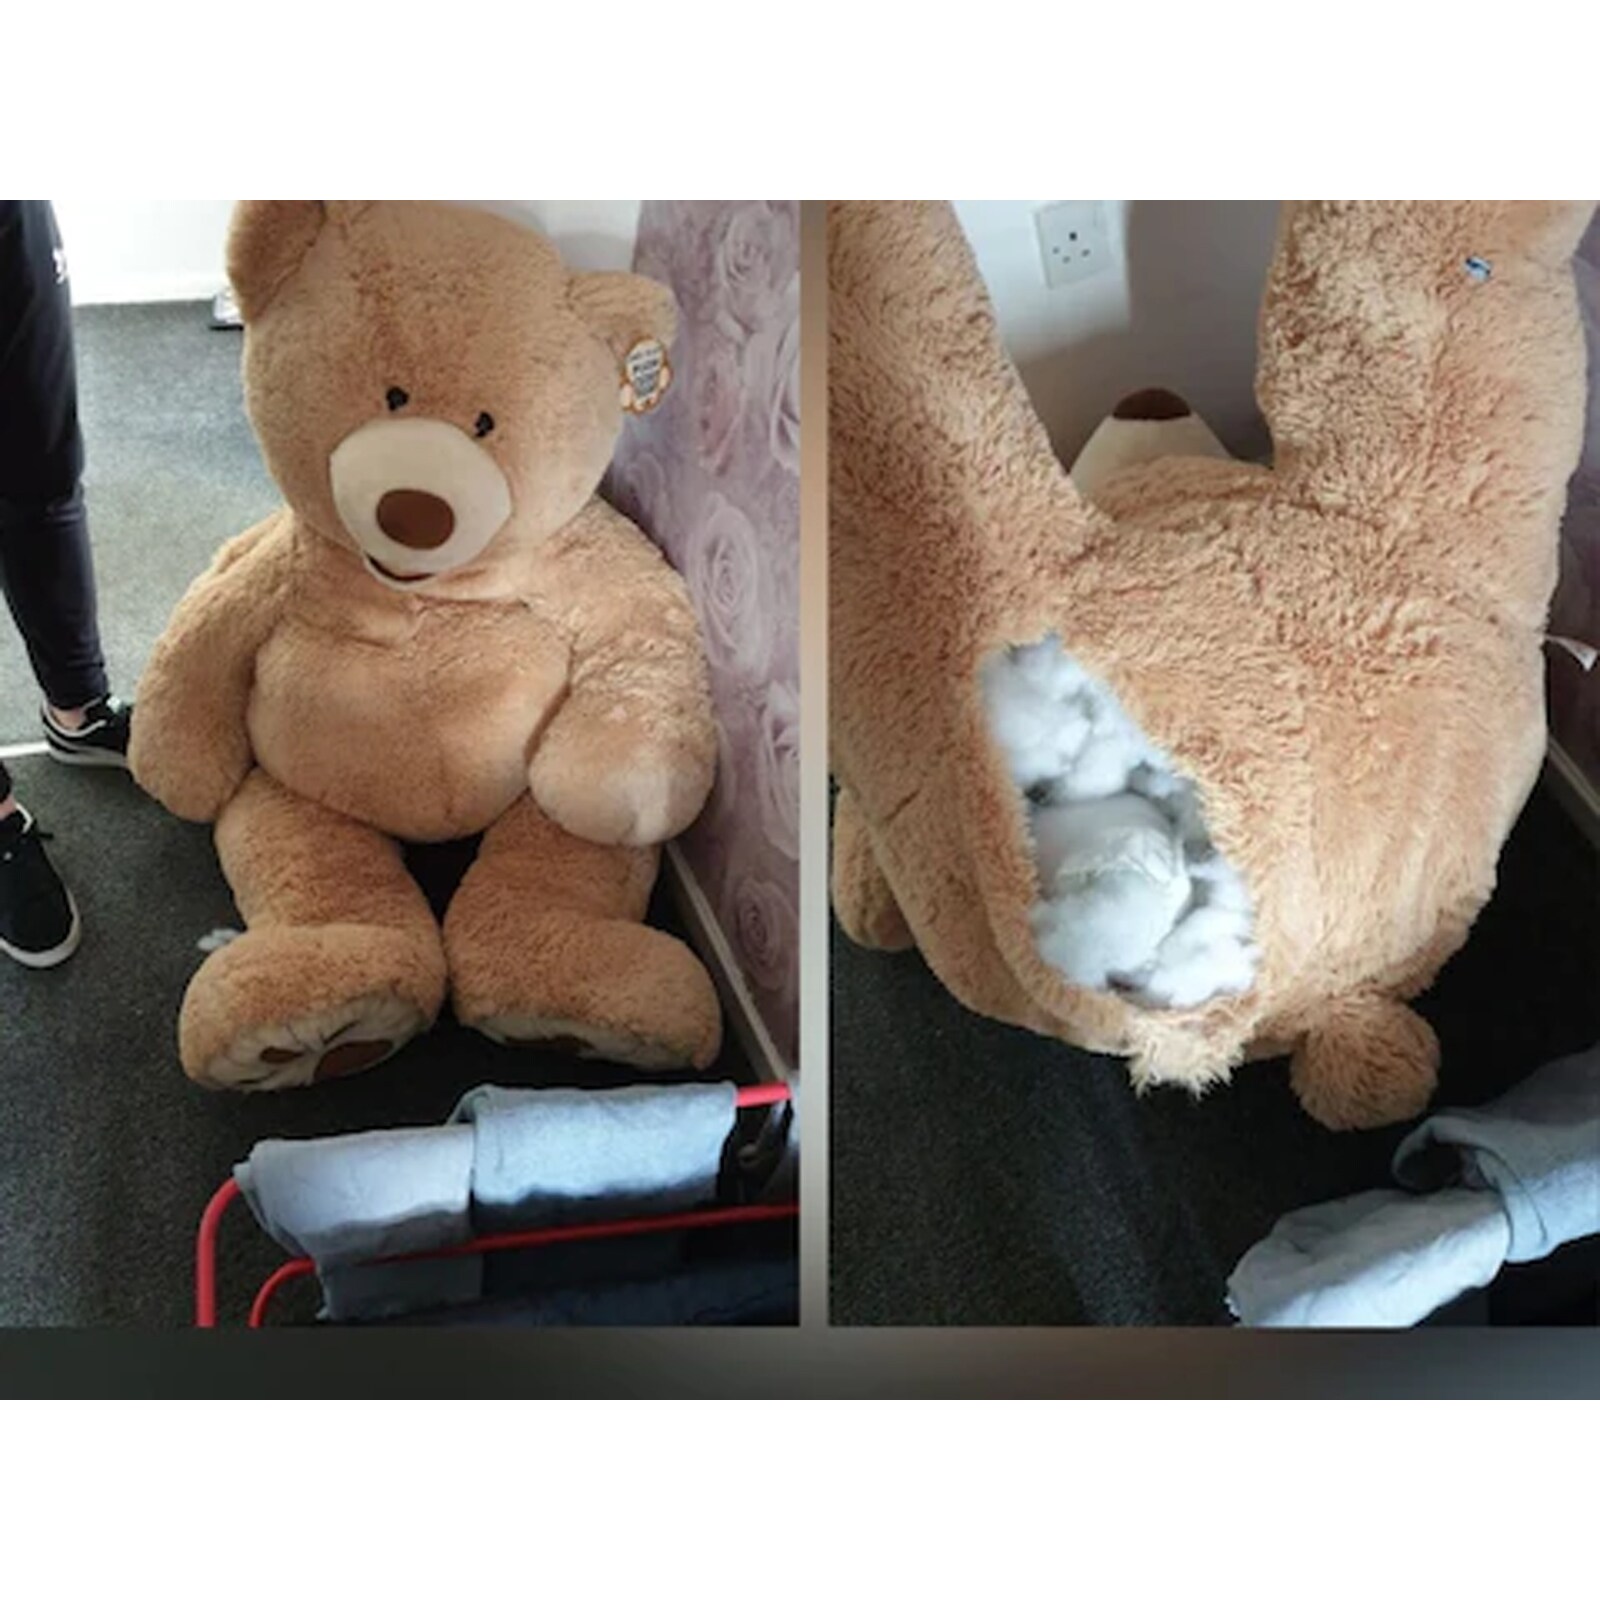 UK Car Thief Hiding Inside A Giant Teddy Bear Baffles Police